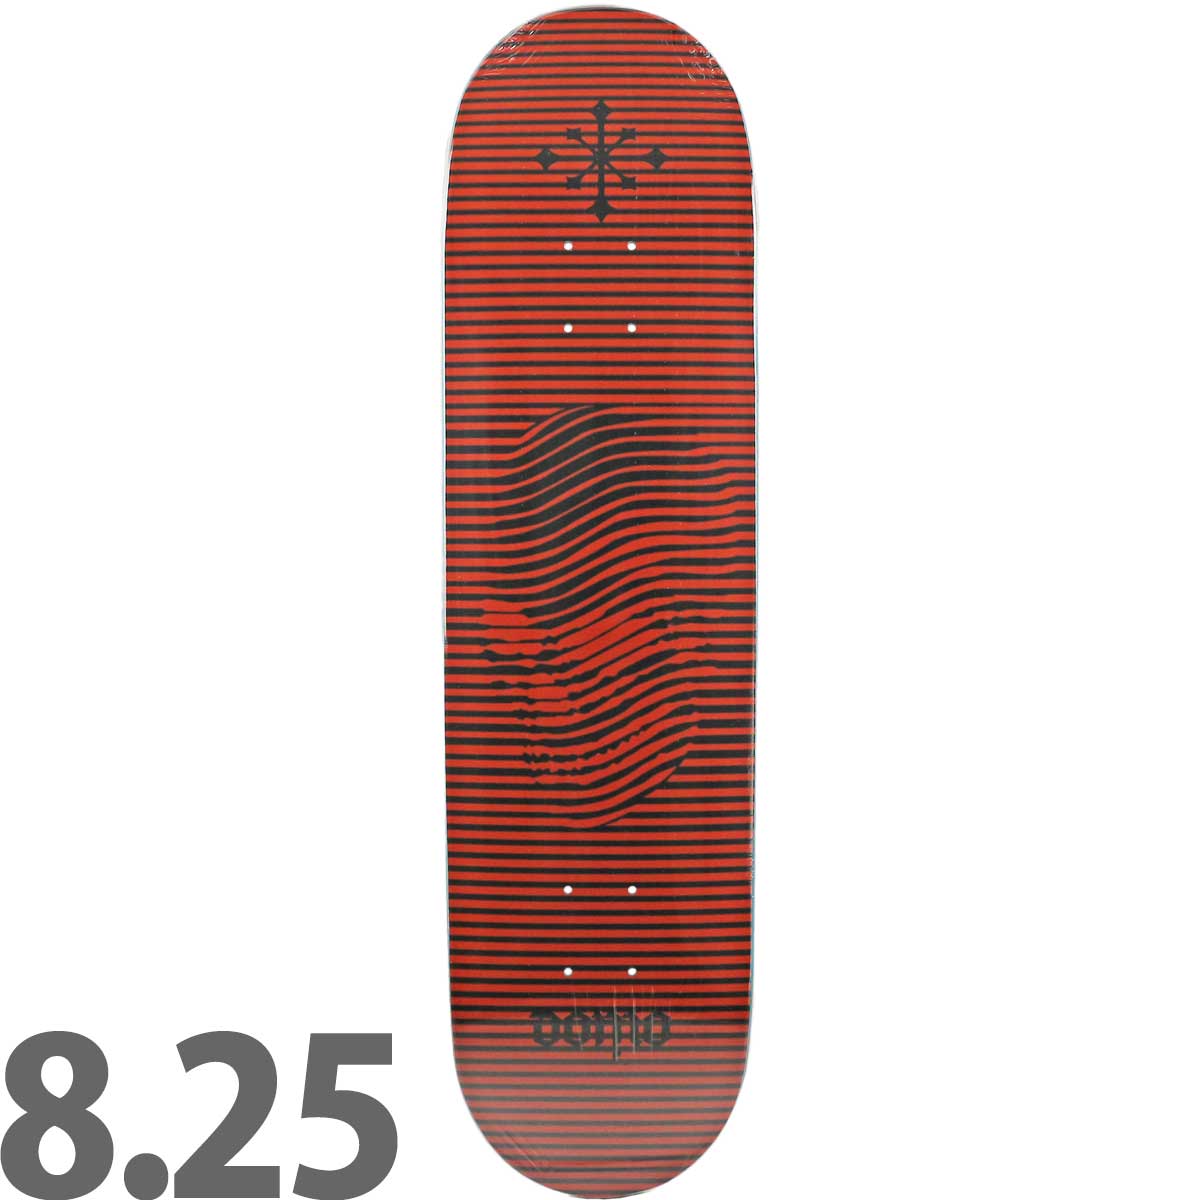 選べる支払い方法 ディスオーダー 8.0インチ スケボー デッキ Disorder Skateboards Pro Domo Lines Deck スケートボード ブランド スケボーデッキ おしゃれ ブランド 板